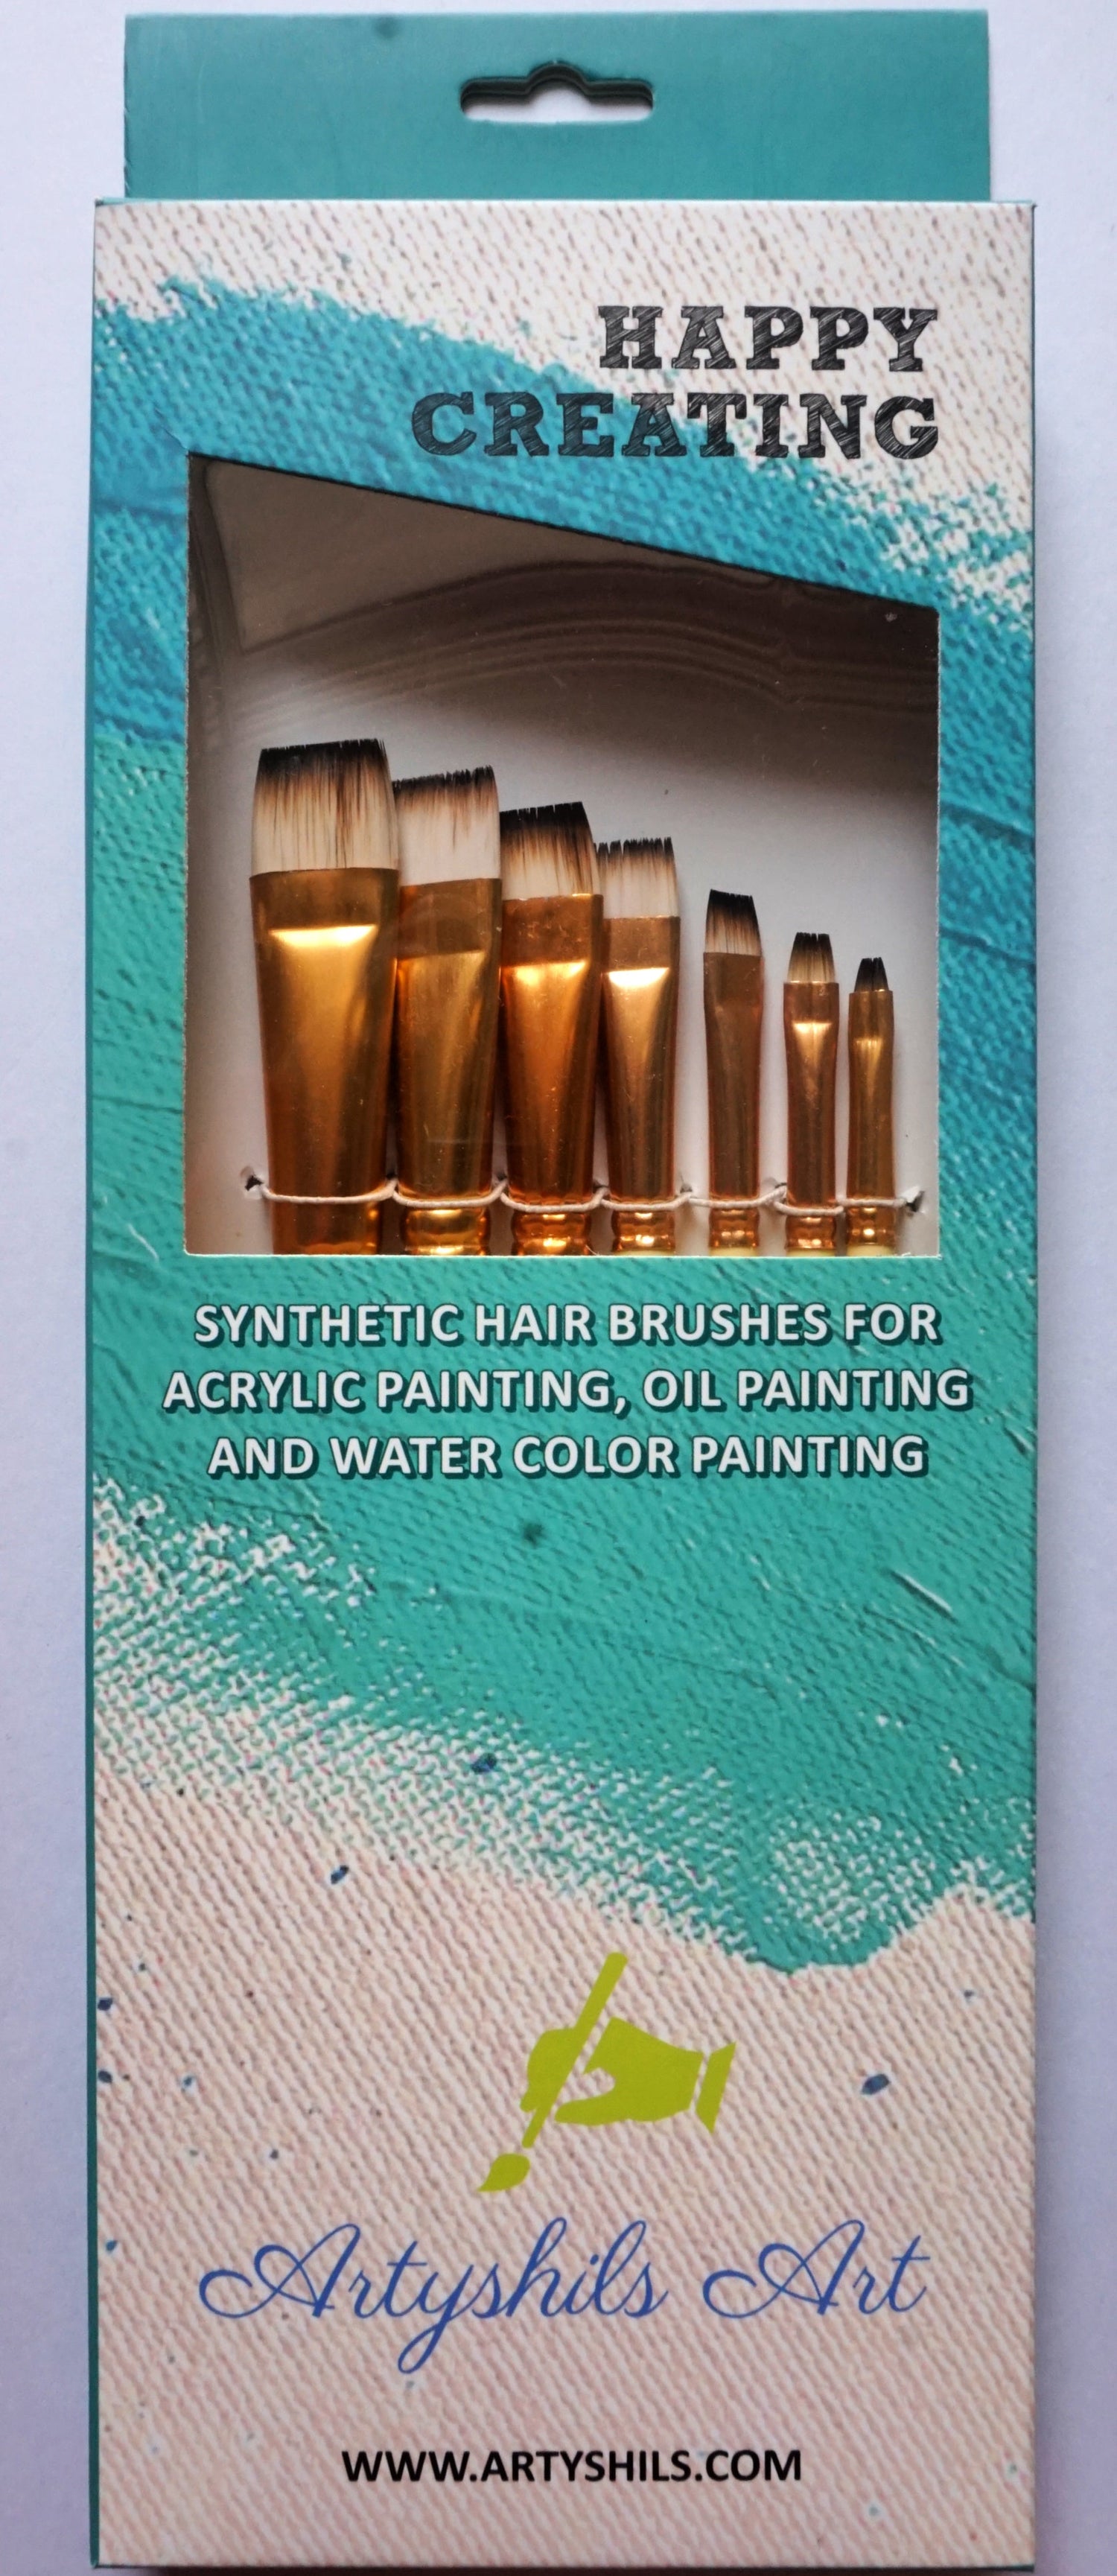 ** VERSION 2 ** Blender brush set for painting by Artyshils Art